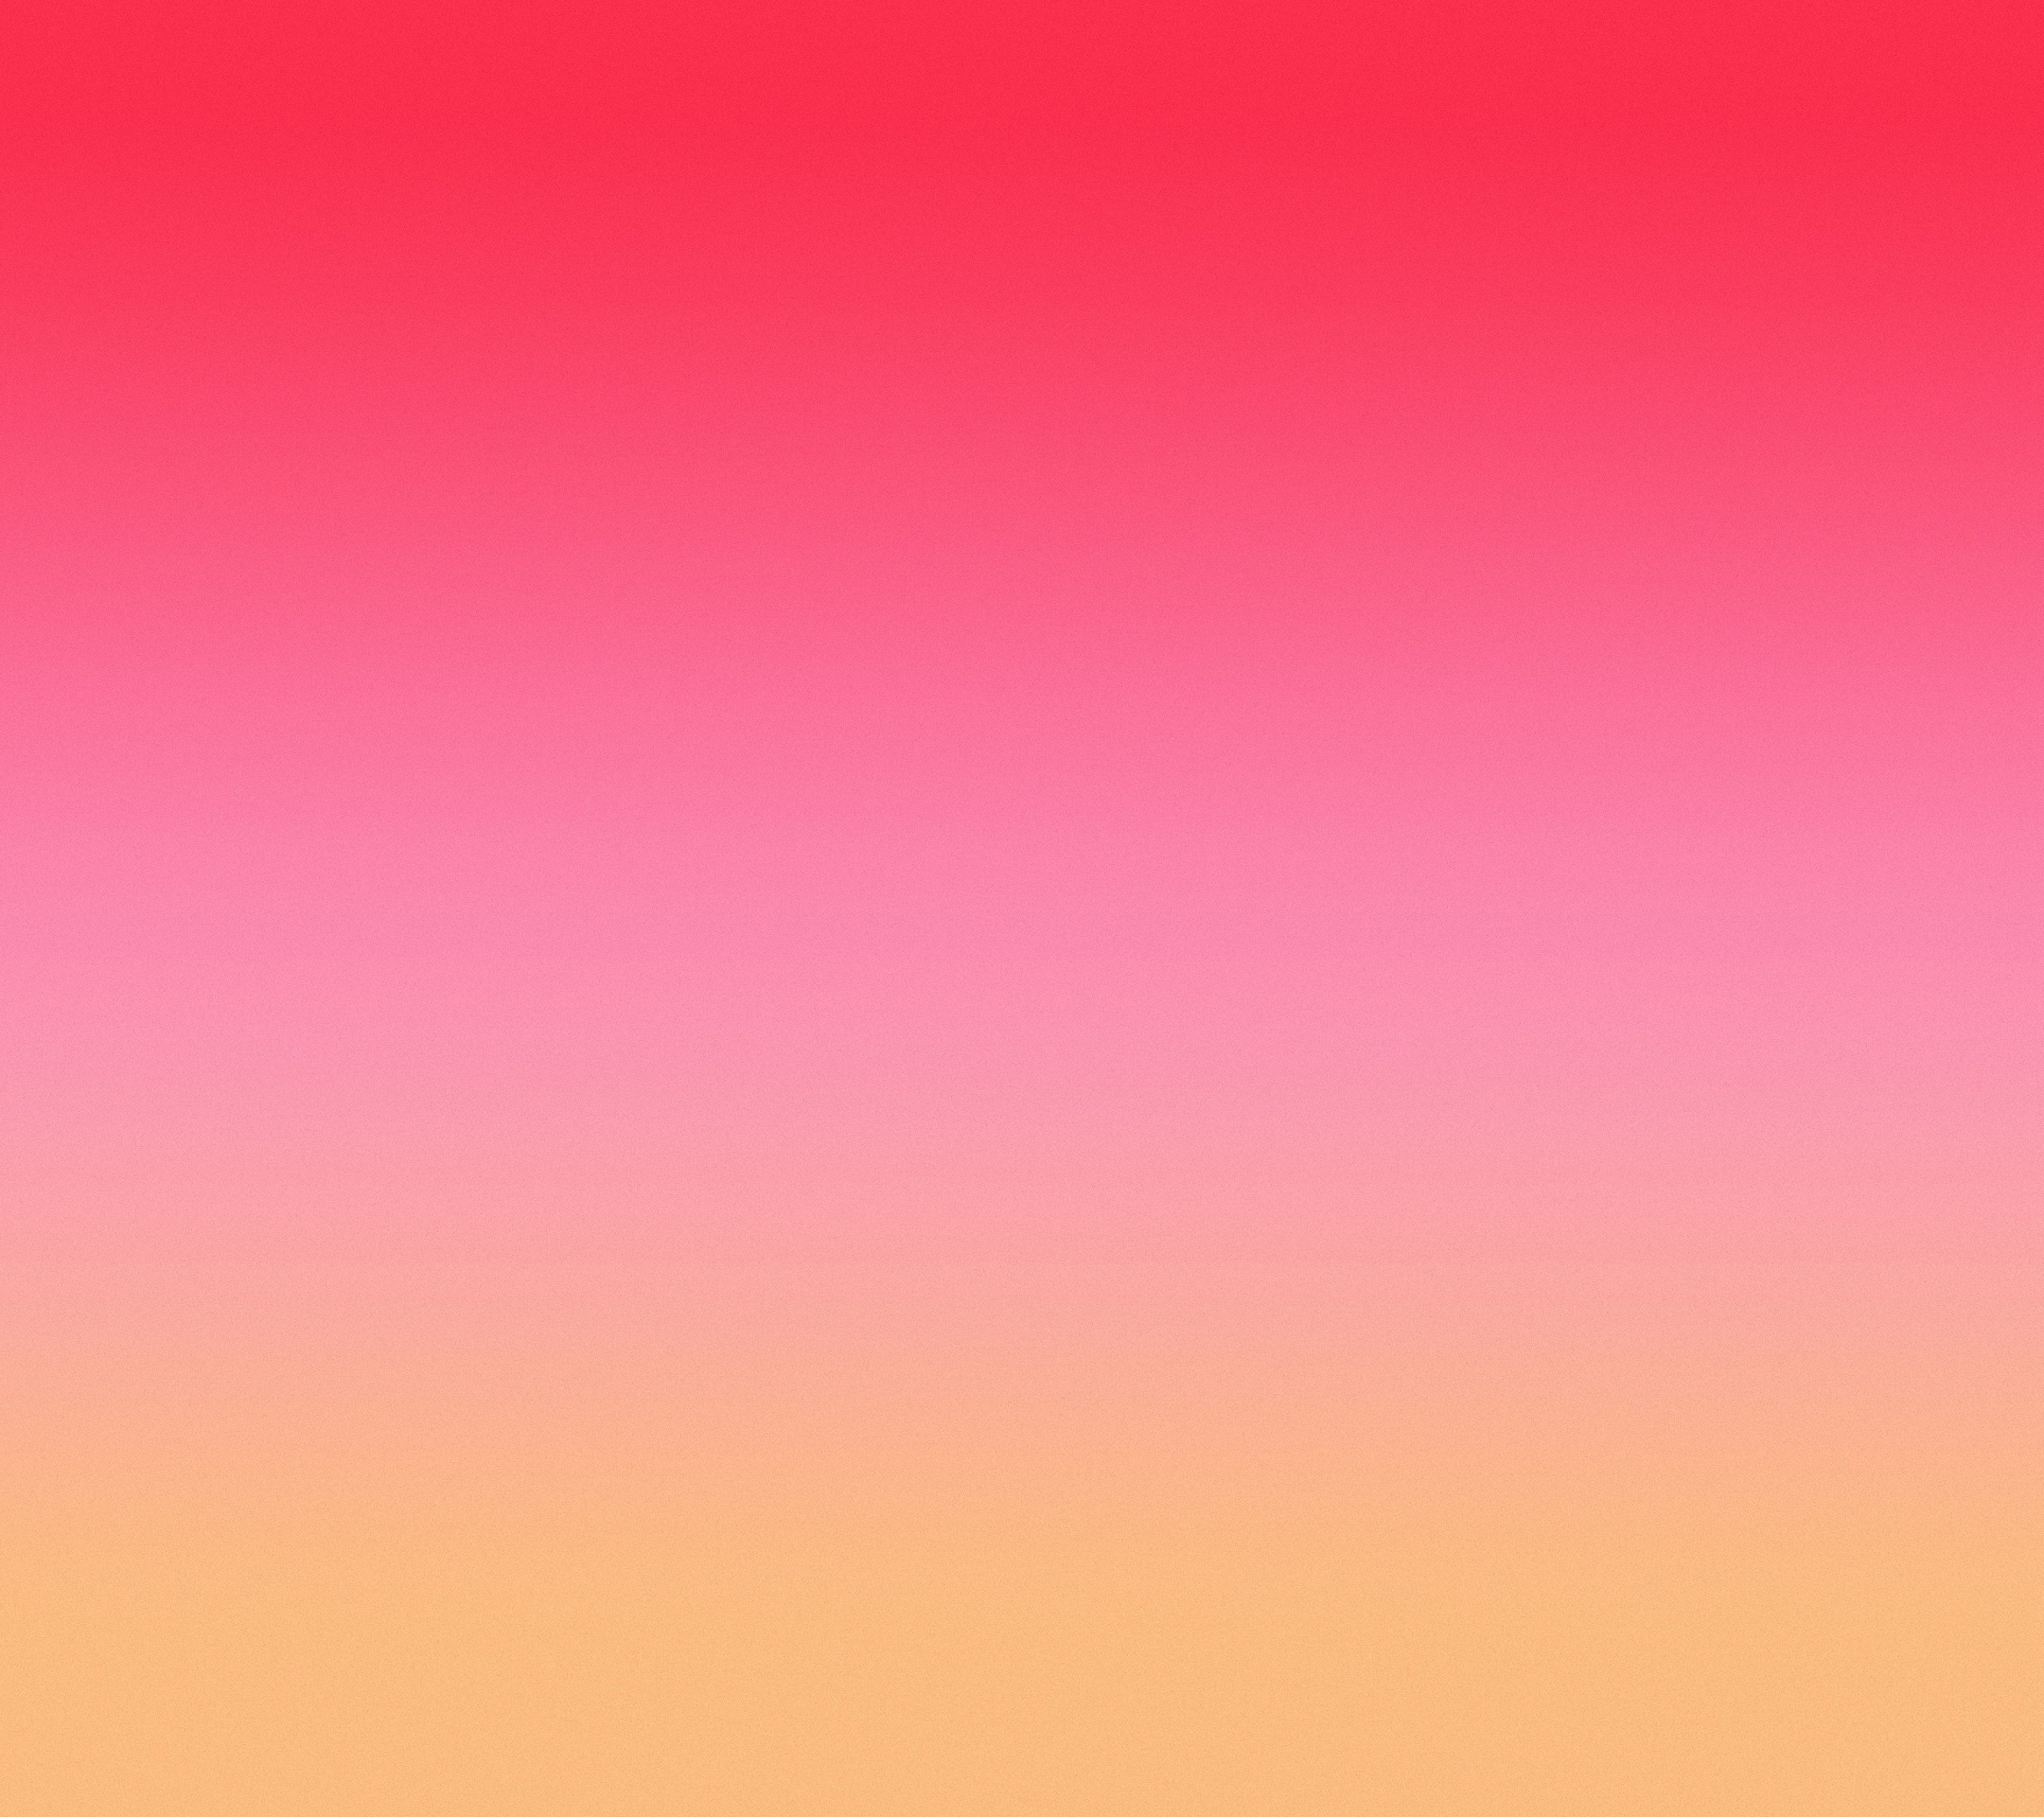 carta da parati color corallo,rosa,rosso,cielo,arancia,pesca